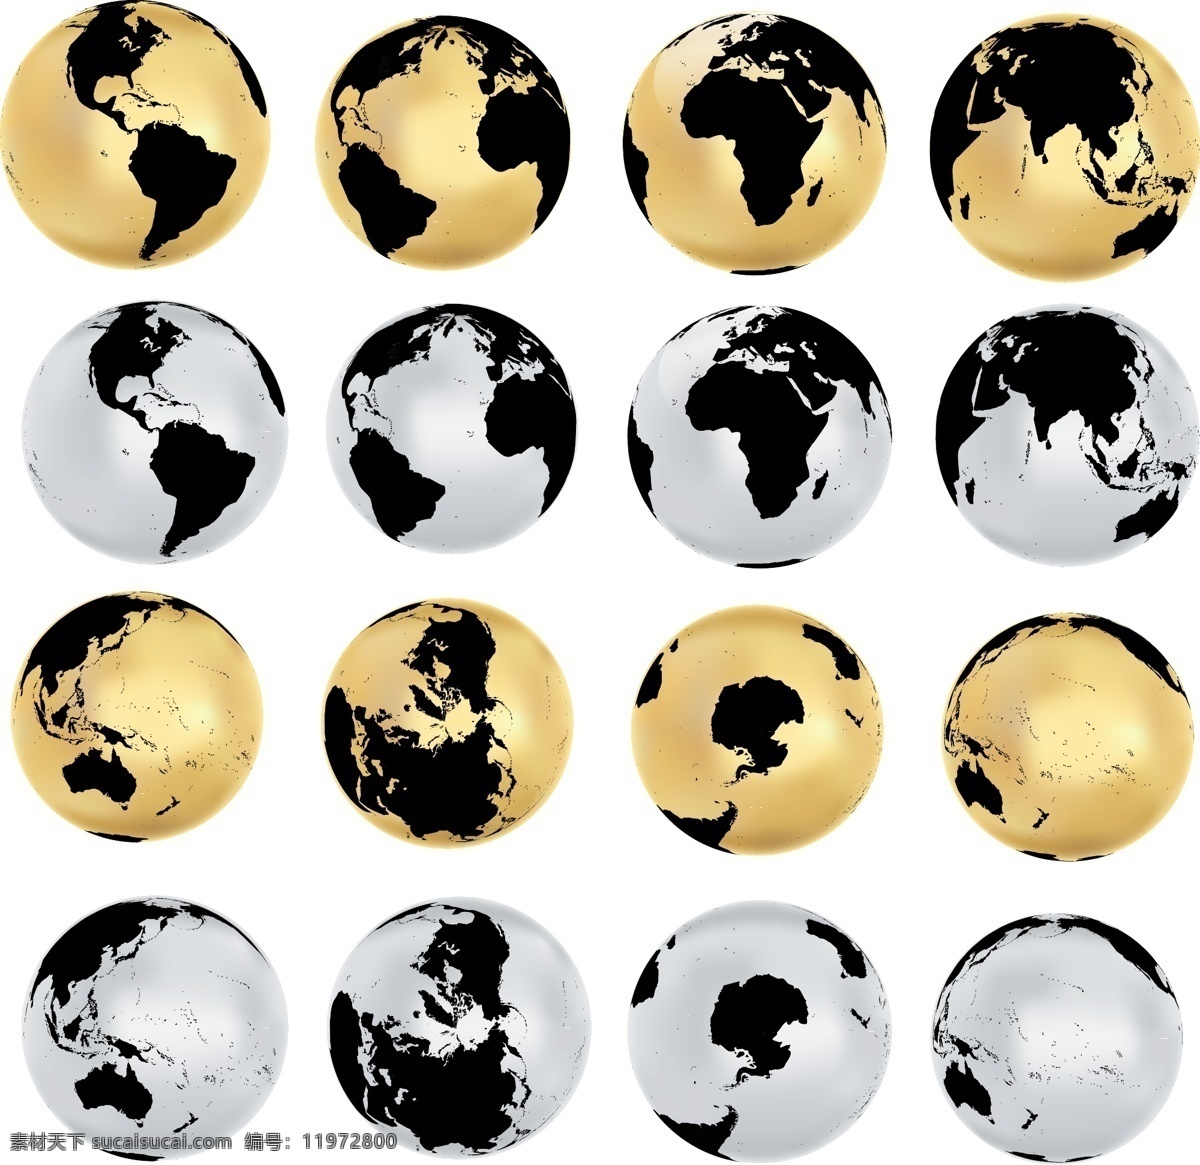 金色地球 立体地球 3d地球 地球图标 几何地球 线条地球 地球剪影 地球仪 全世界 世界地域 世界形状 世界图形 地形 矢量地球 卡通地球 手绘地球 地球插画 地球集合 系列地球 地球系列 创意地球 艺术地球 蓝色地球 图标标签标志 标志图标 其他图标